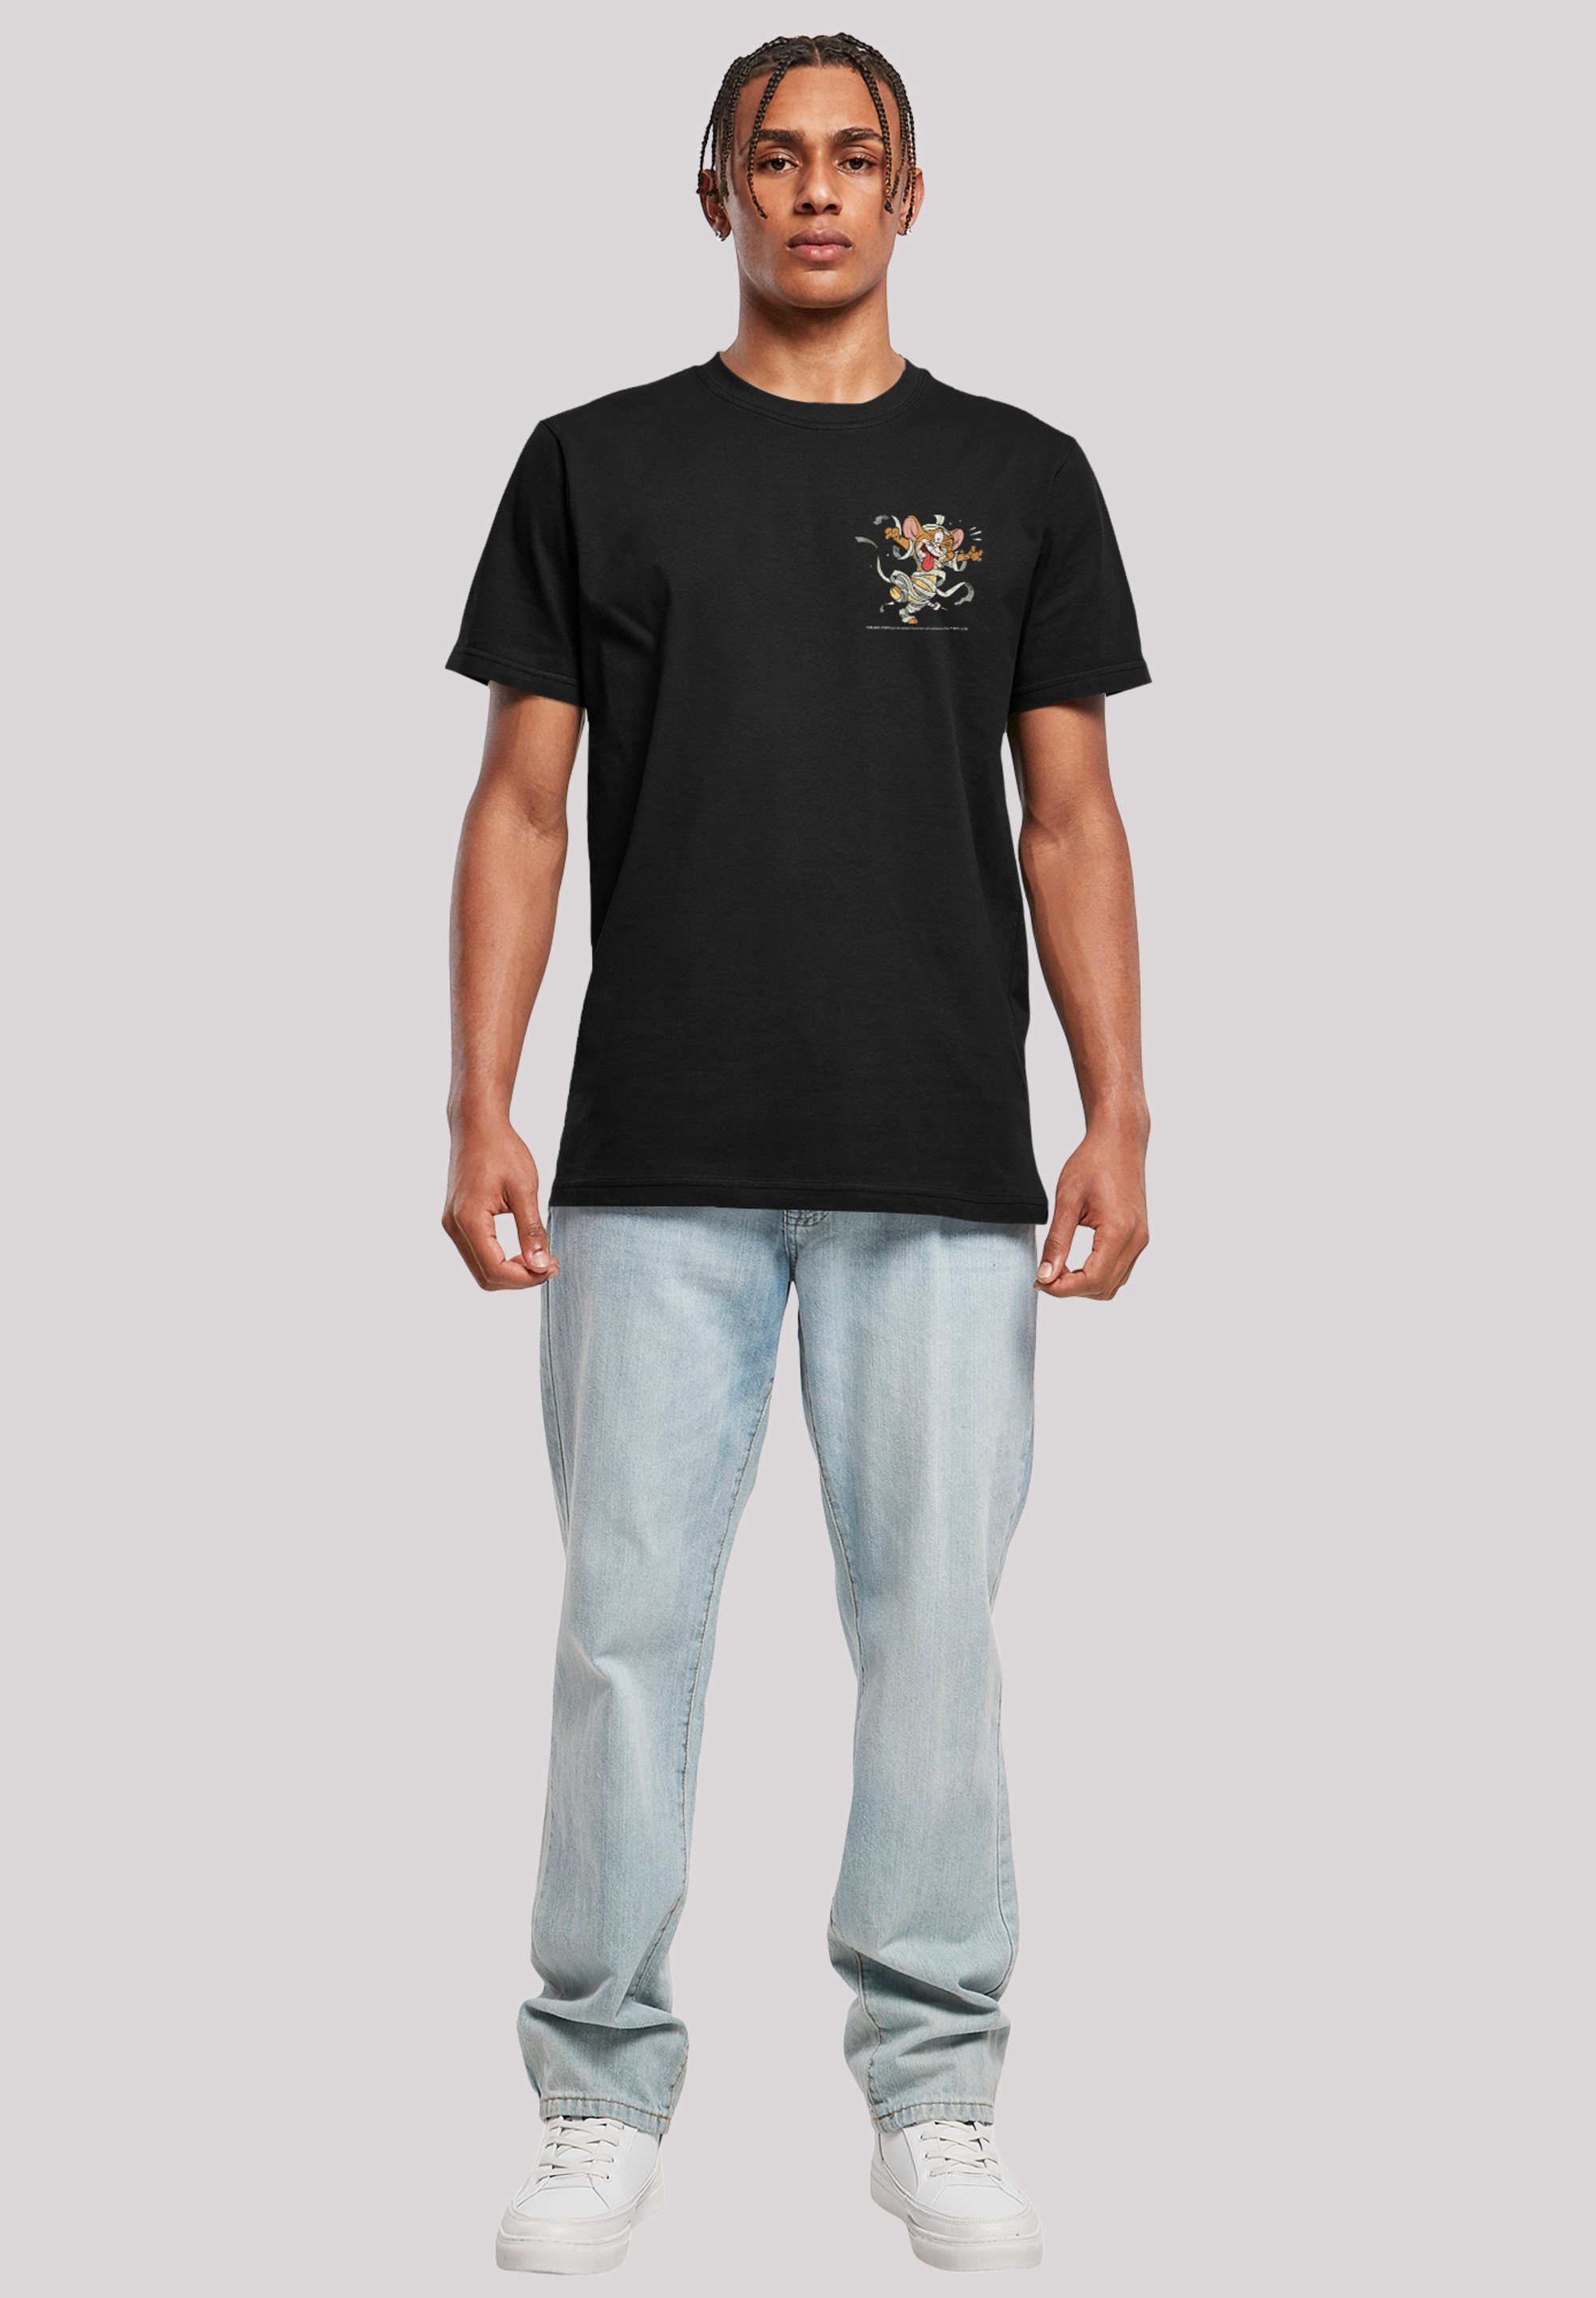 F4NT4STIC T-Shirt Tom Mummy schwarz Jerry Jerry Pocket Faux Print und